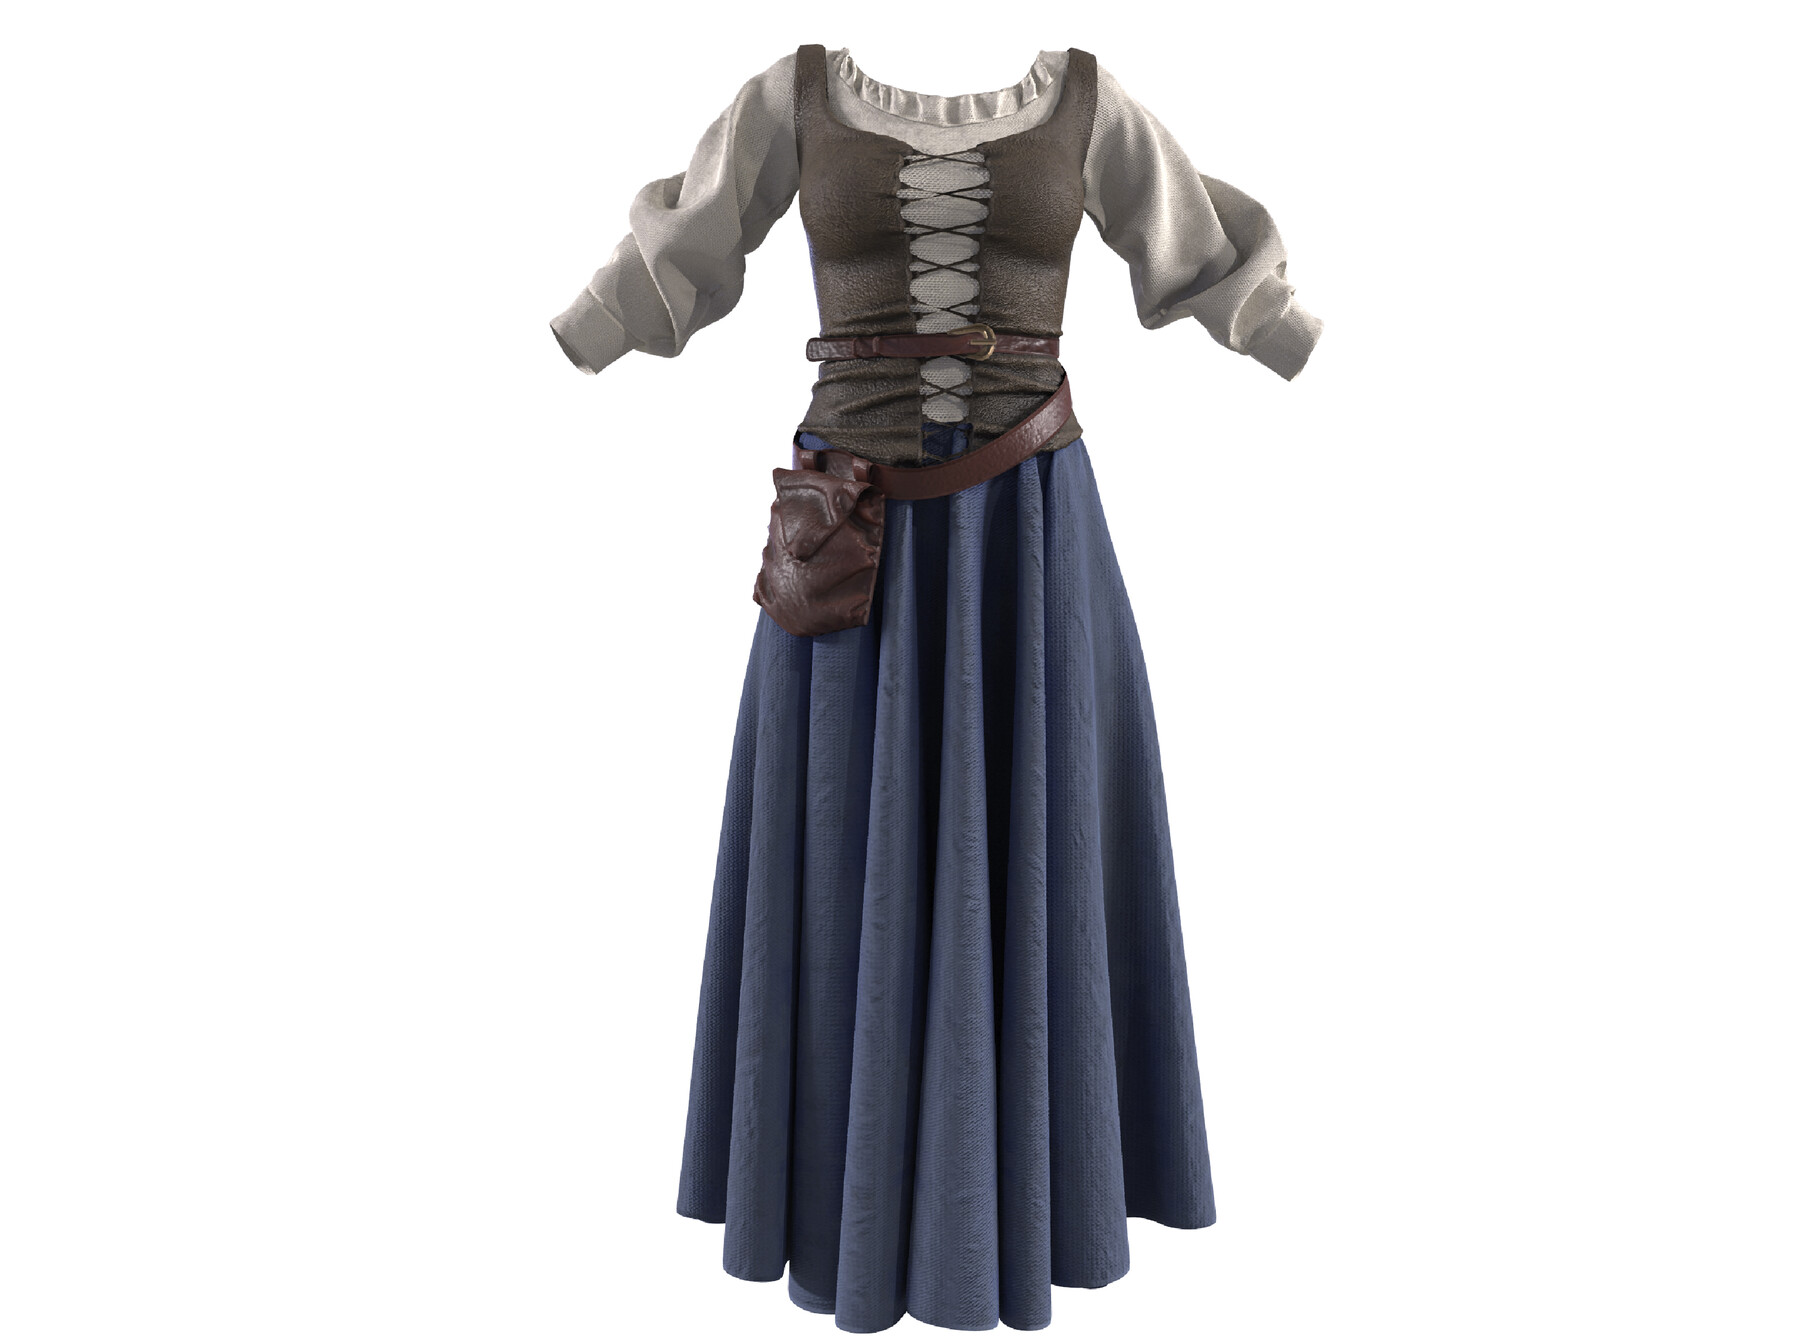 medieval peasant clothing